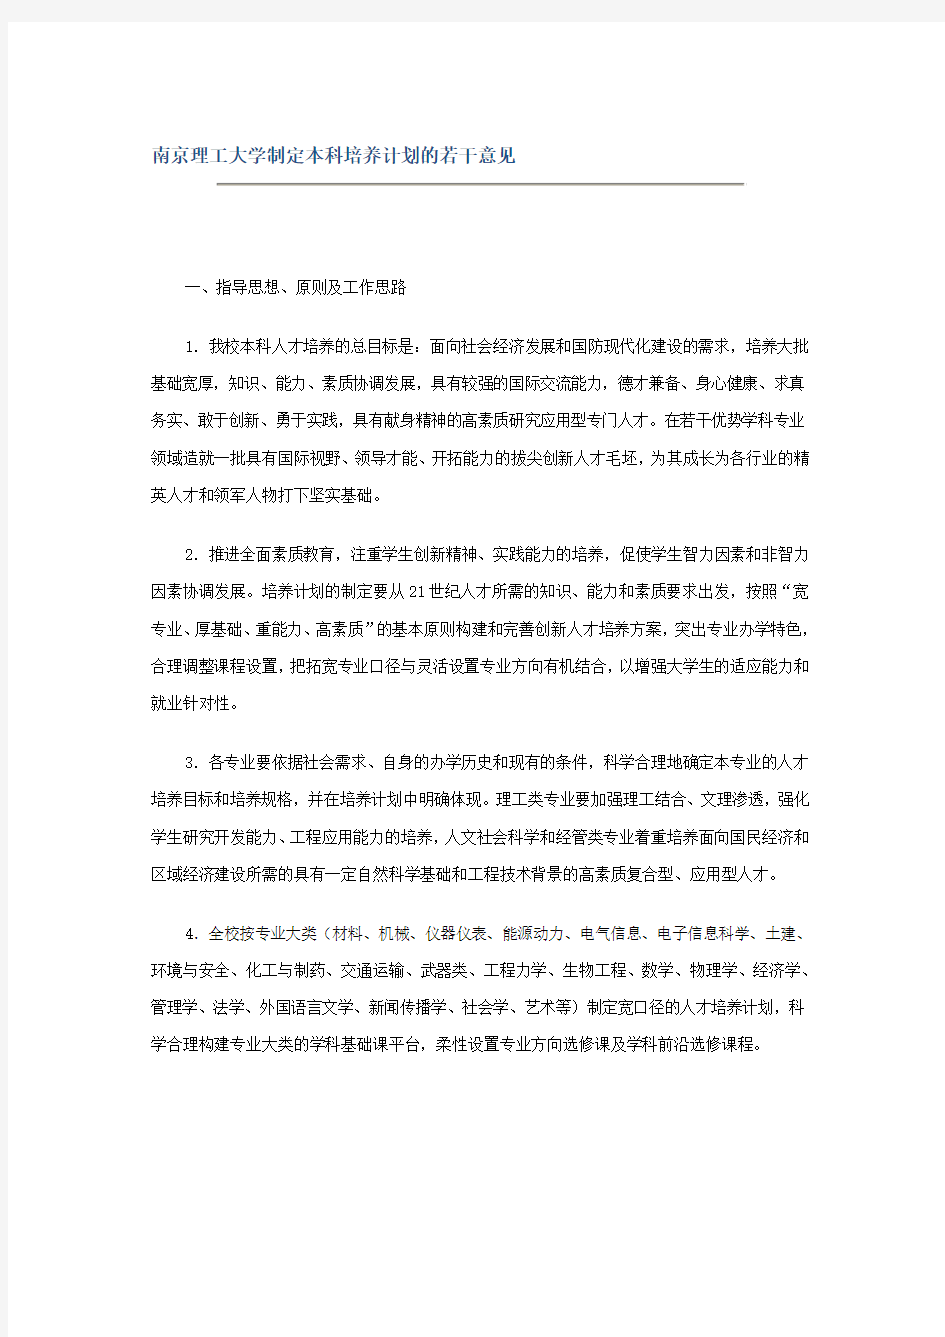 (推荐)南京理工大学制定本科培养计划的若干意见